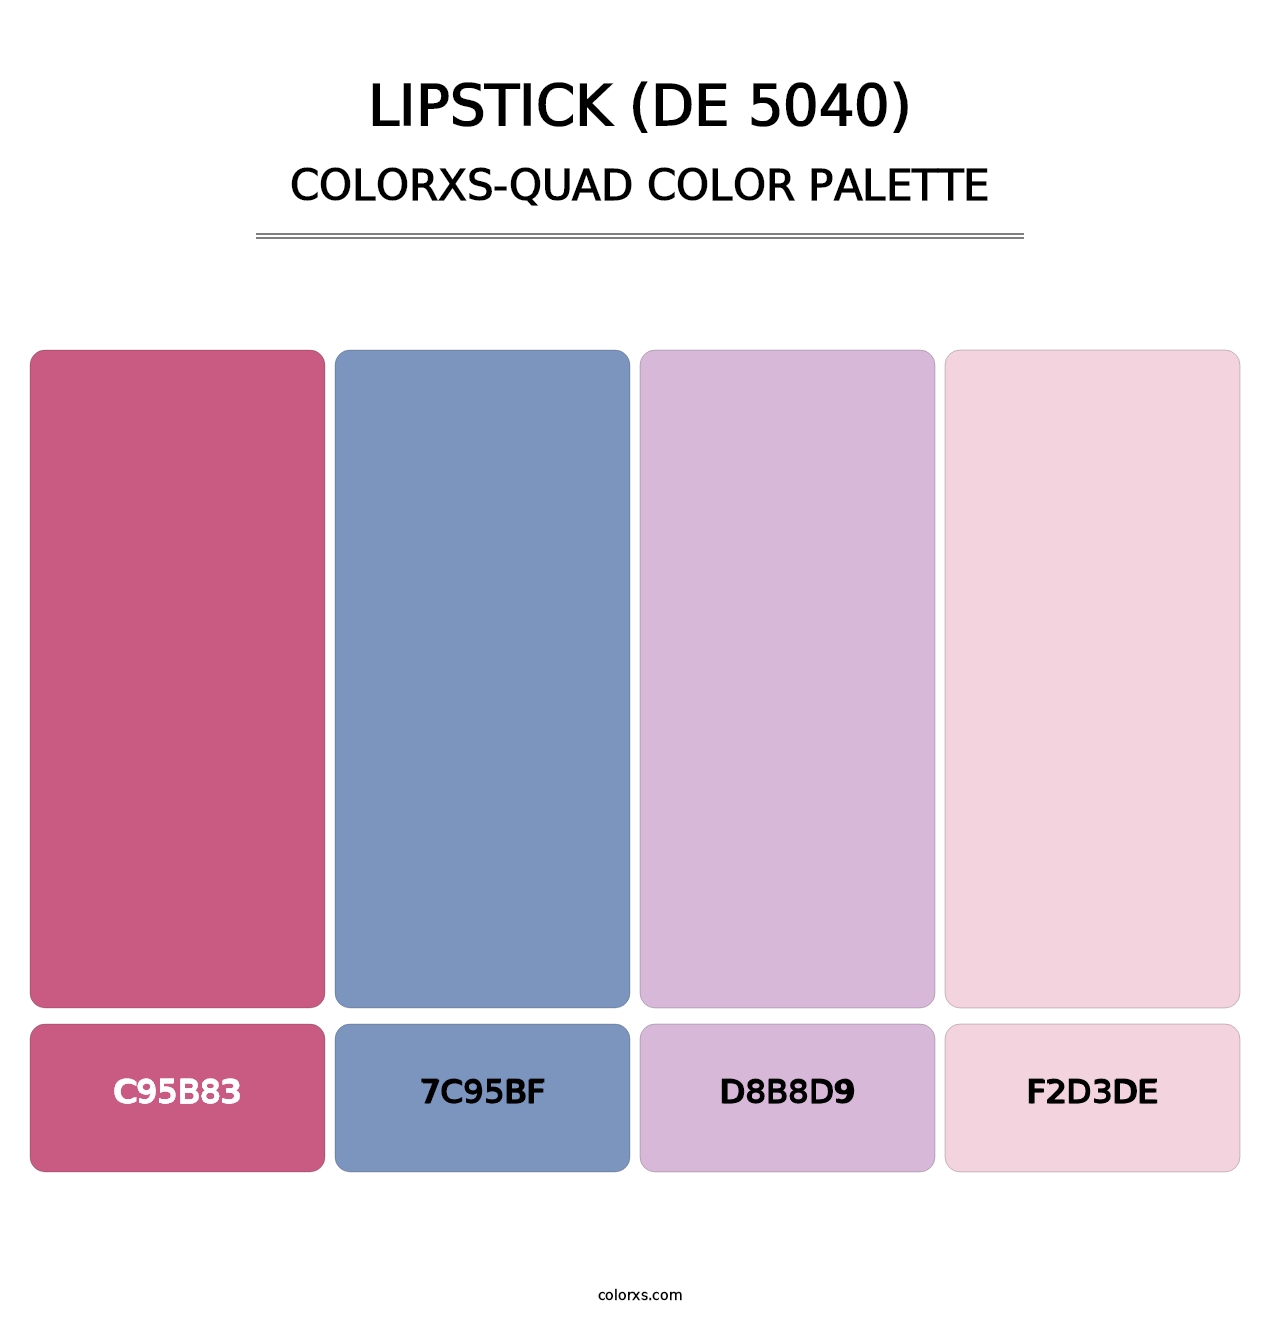 Lipstick (DE 5040) - Colorxs Quad Palette